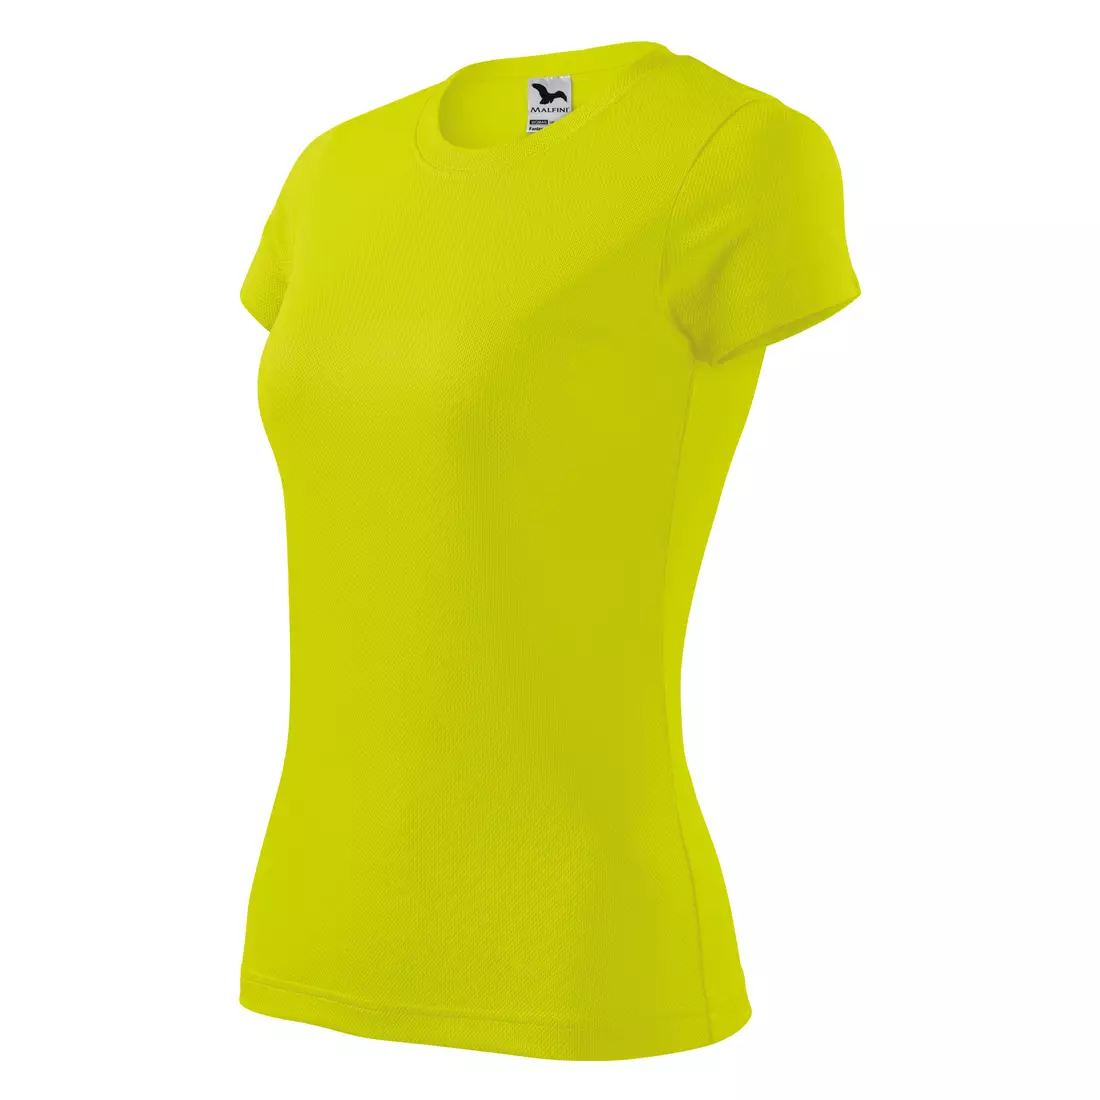 MALFINI FANTASY - Női sportpóló 100% poliészter, neon sárga 1409012-140